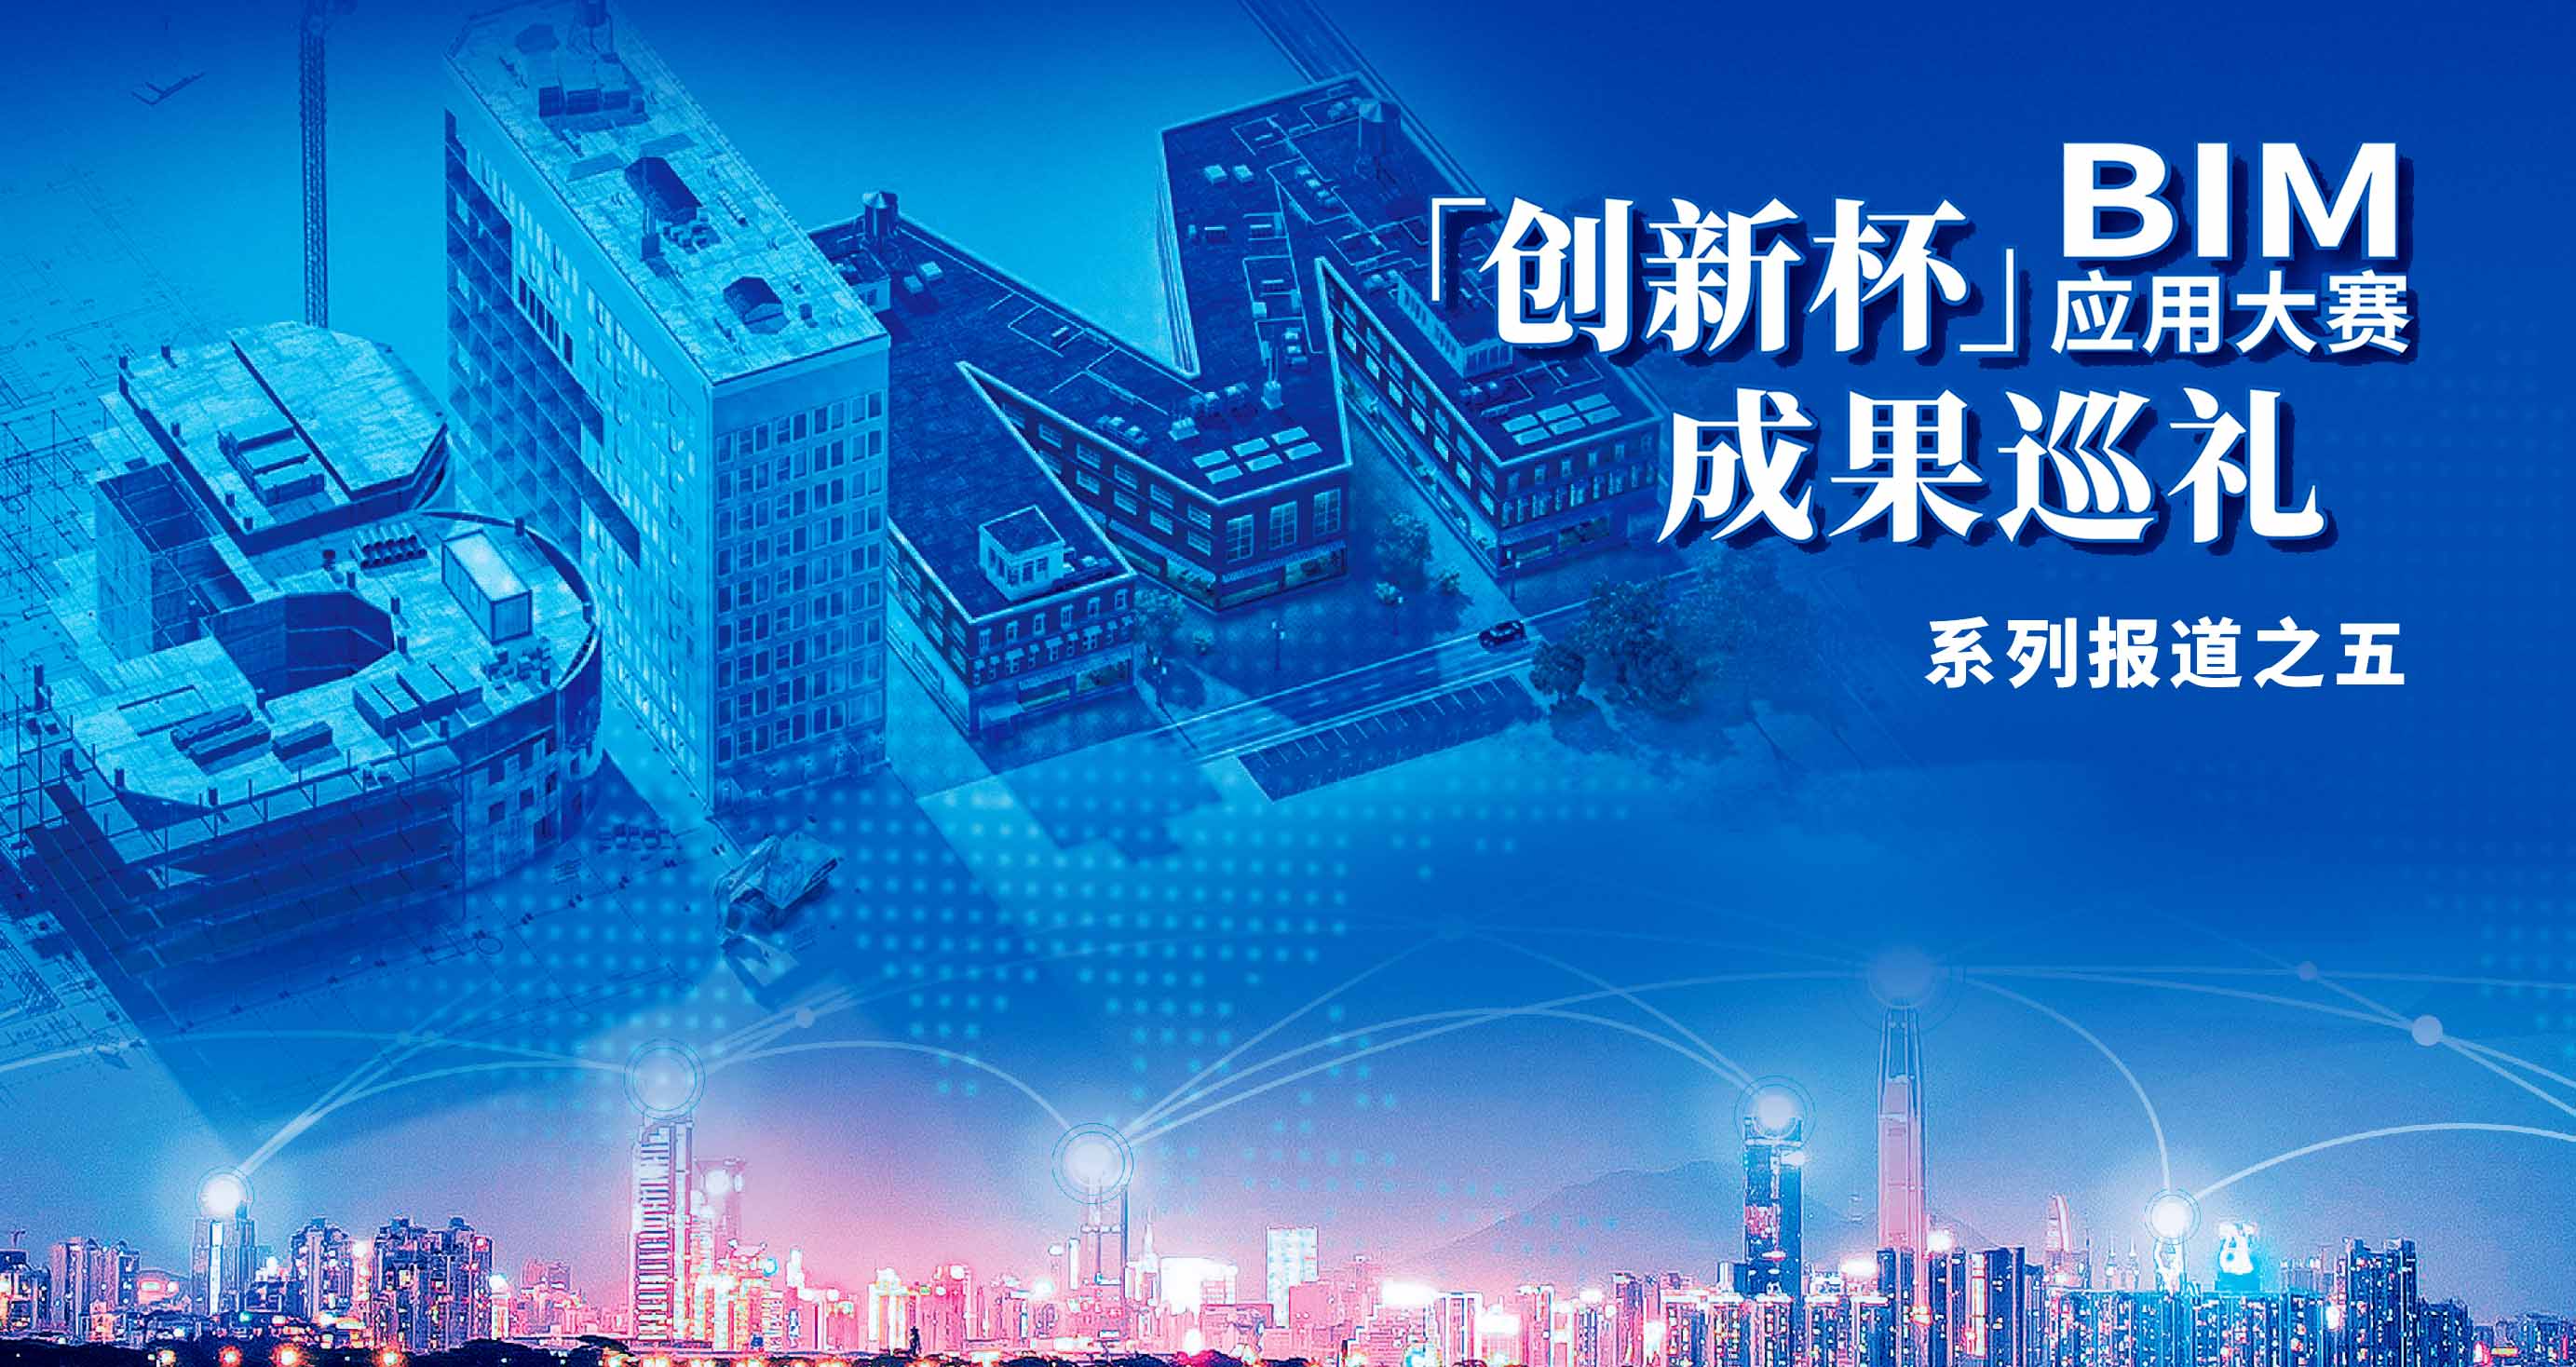 中海成都天府新区超高层项目引领超塔数字化应用新标准